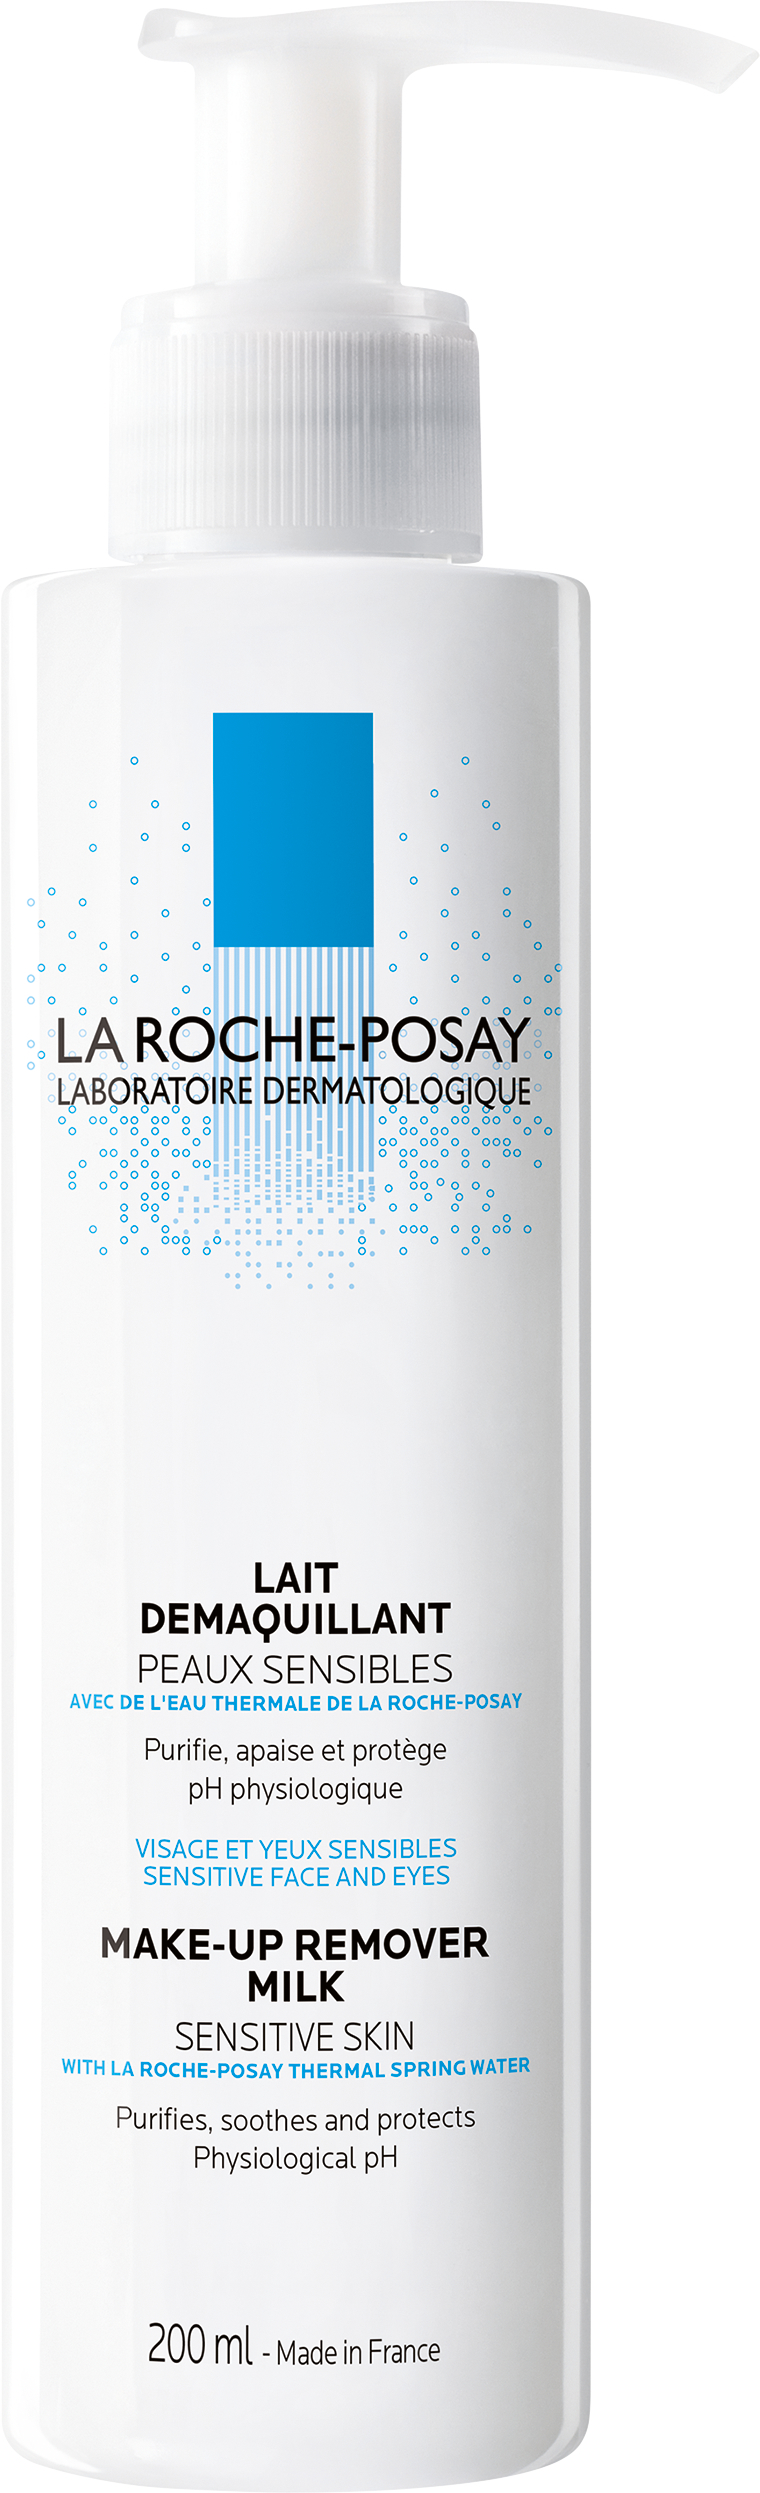 La Roche-Posay Sensitive Skin Make-up Remover Milk 200 ml